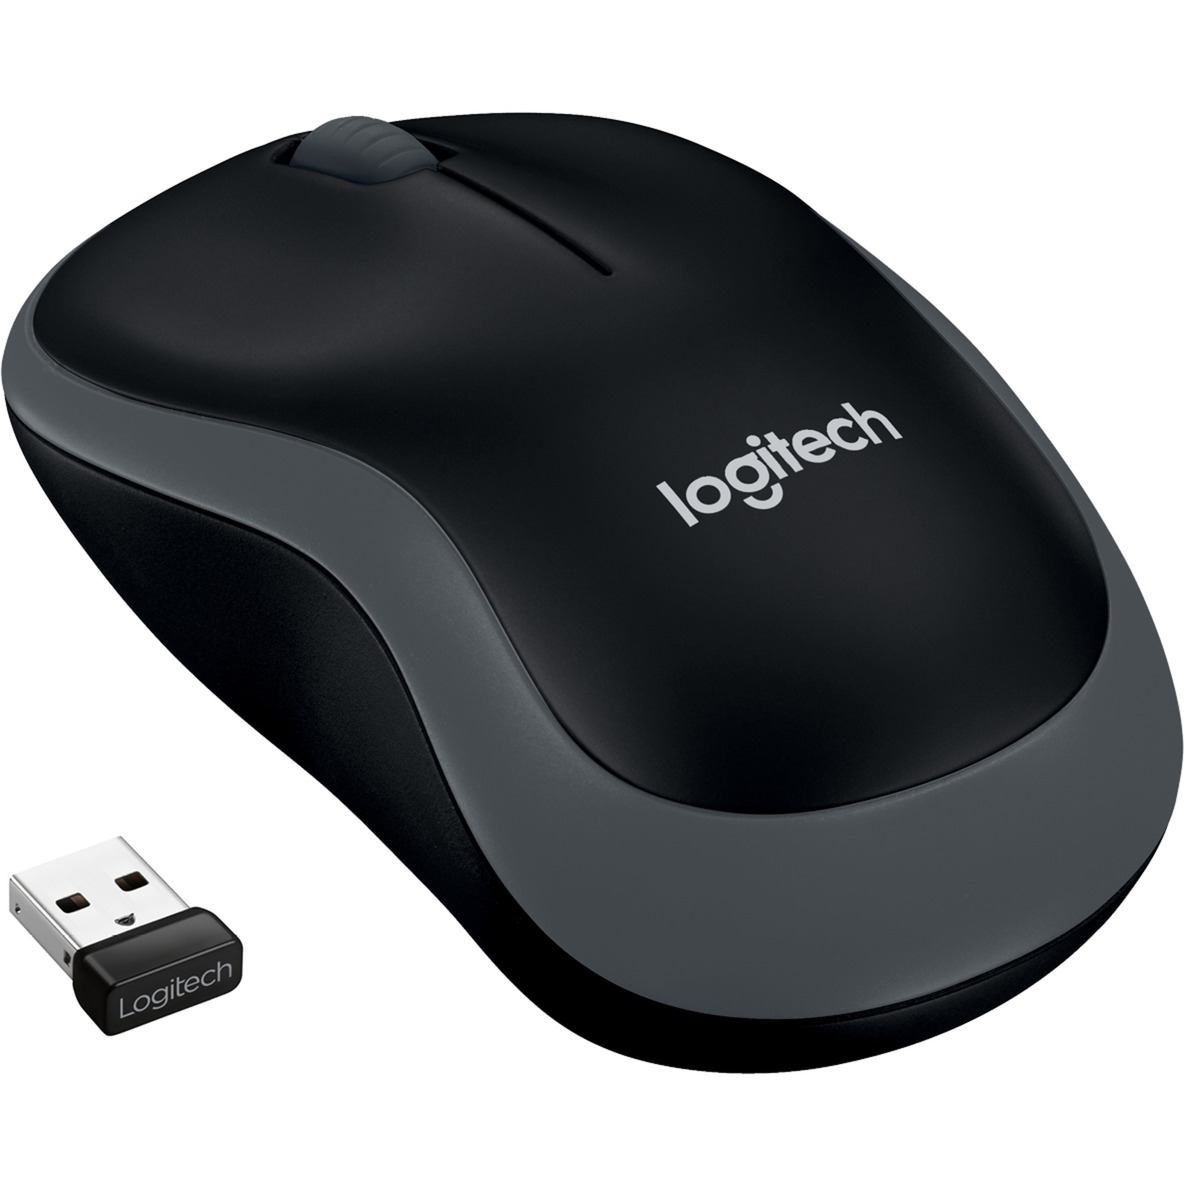 Image of Alternate - Wireless Mouse M185, Maus online einkaufen bei Alternate